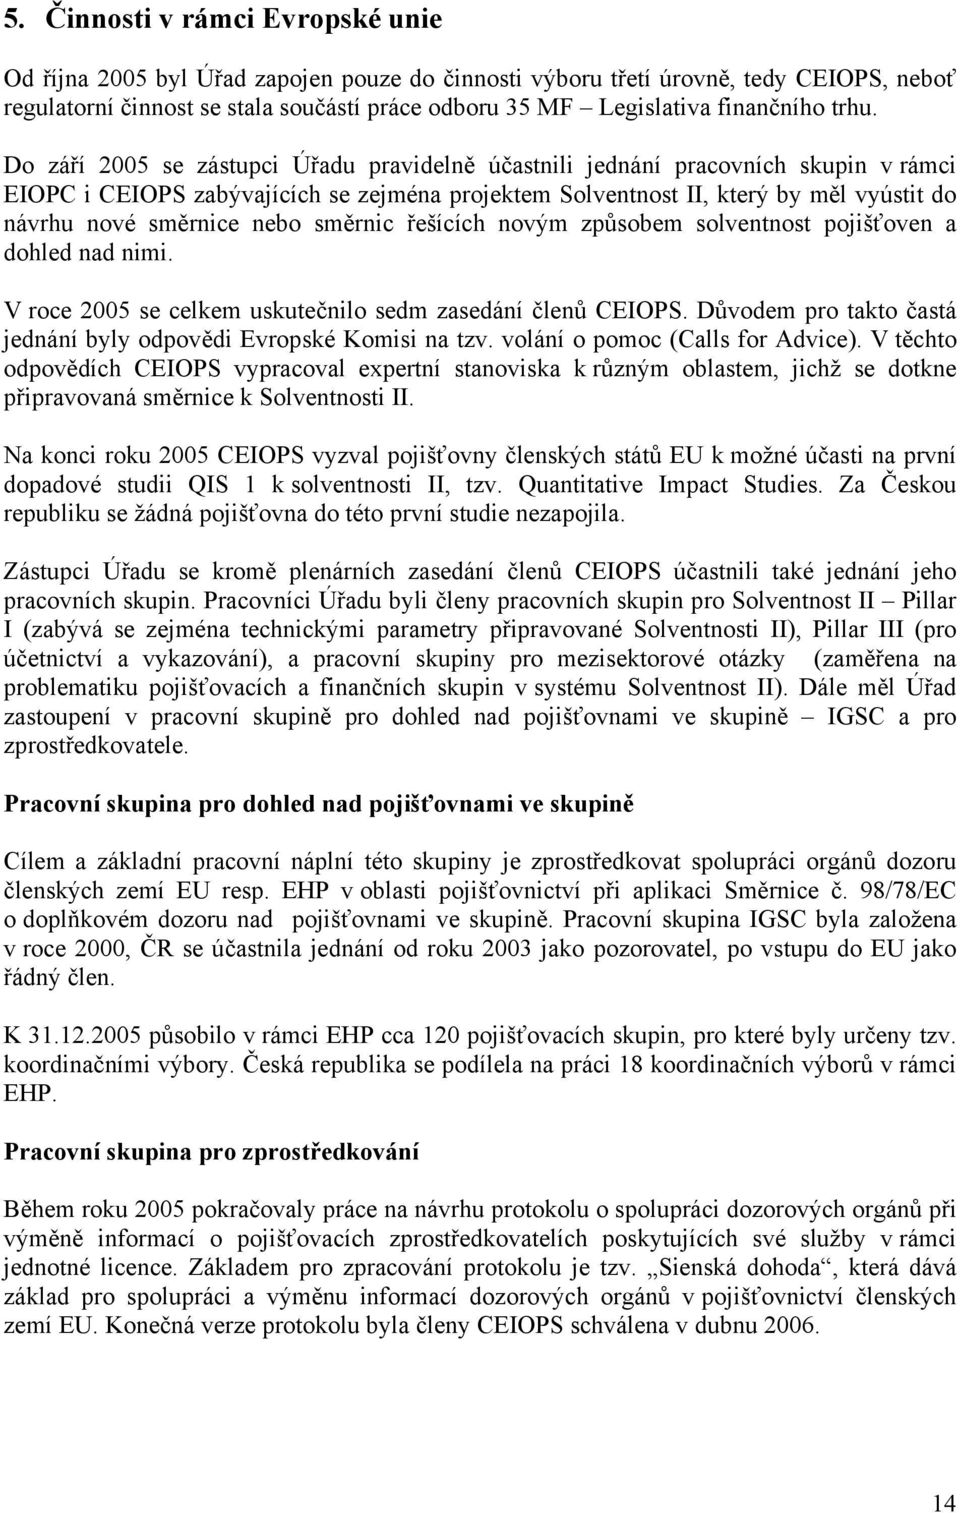 Do září 2005 se zástupci Úřadu pravidelně účastnili jednání pracovních skupin v rámci EIOPC i CEIOPS zabývajících se zejména projektem Solventnost II, který by měl vyústit do návrhu nové směrnice